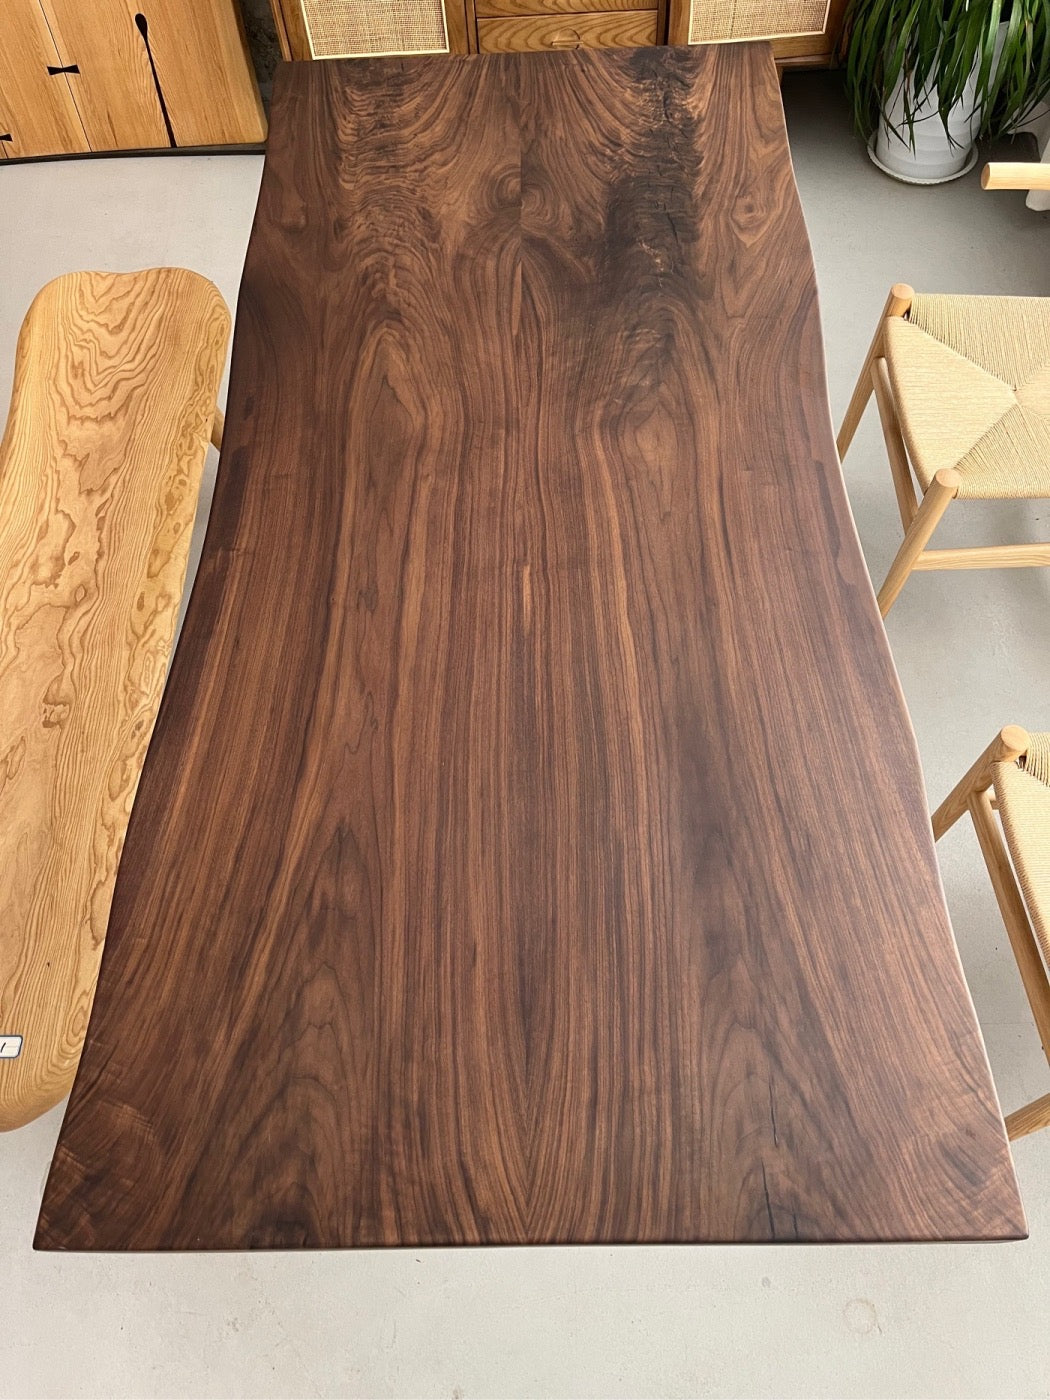 Lastra di noce nera americana, lastra di legno con bordo vivo, tavolo unico